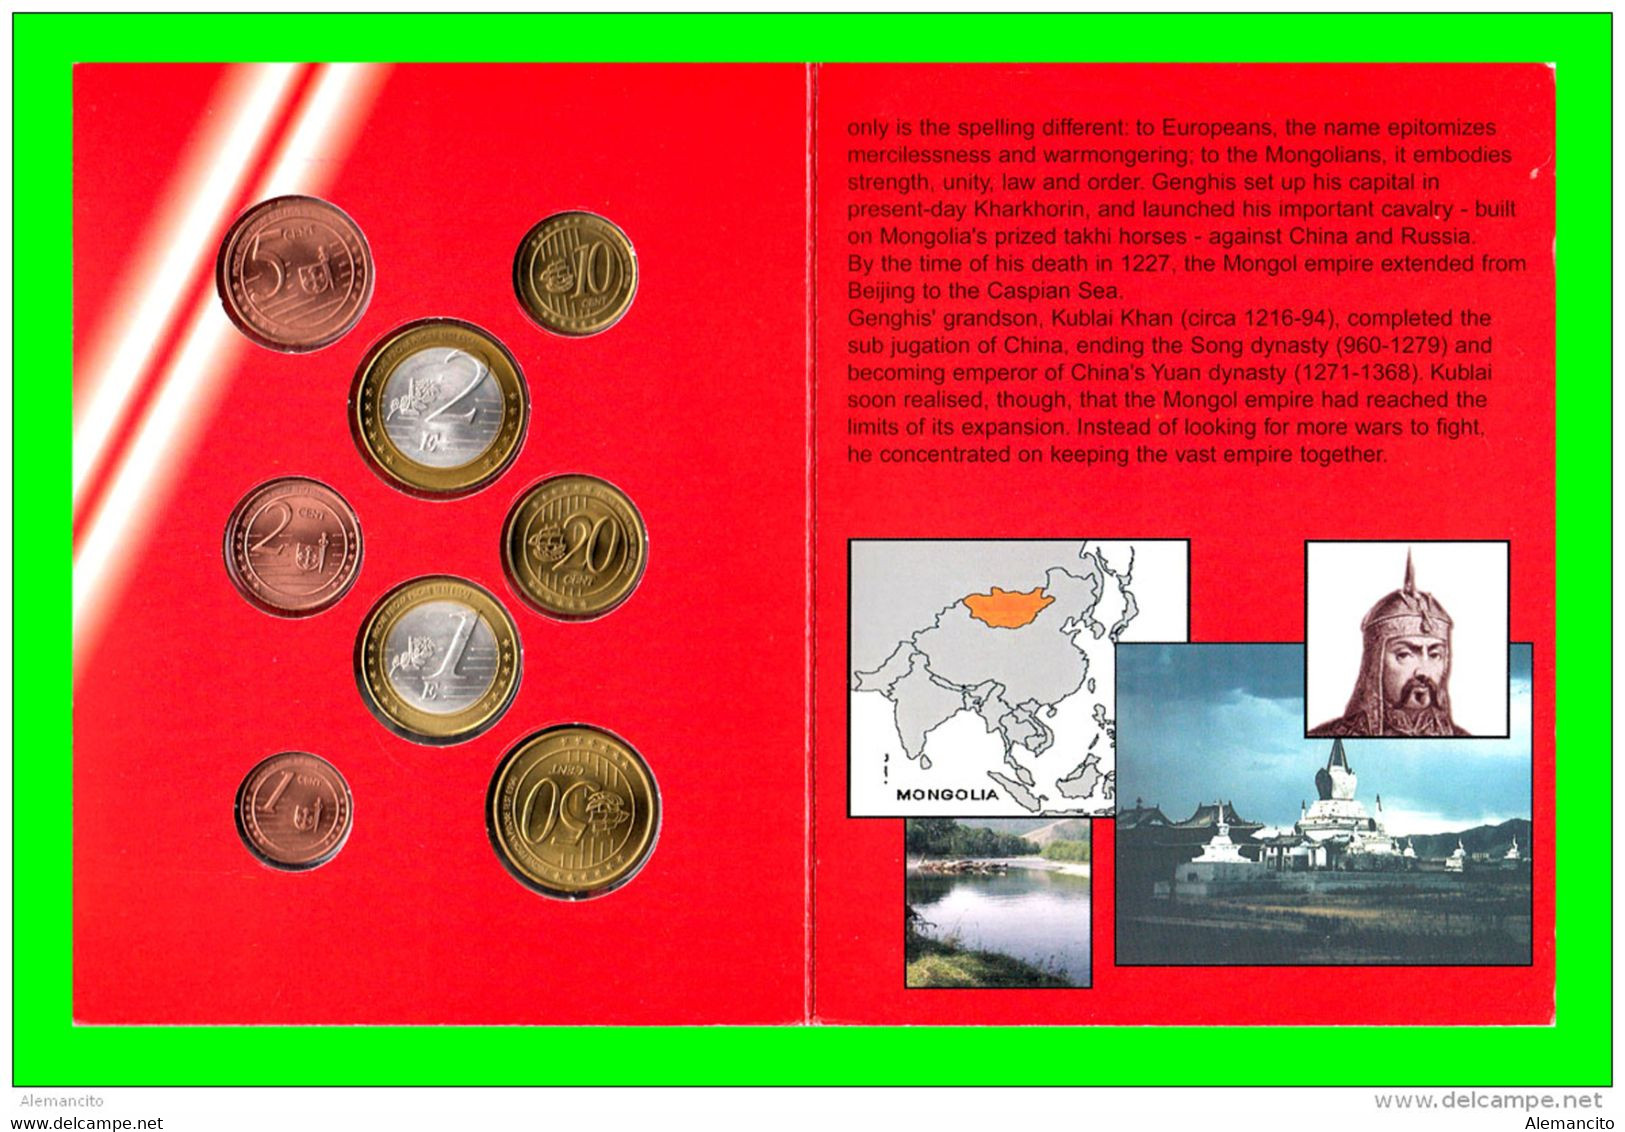 MONGOLIA - ( ASIA ORIENTAL ) CARTERA CON LA SERIE DE EUROS EN PRUEBA DEL AÑO 2005 COMPUESTA POR 8 MONEDAS DEL EURO PRUEB - Privatentwürfe